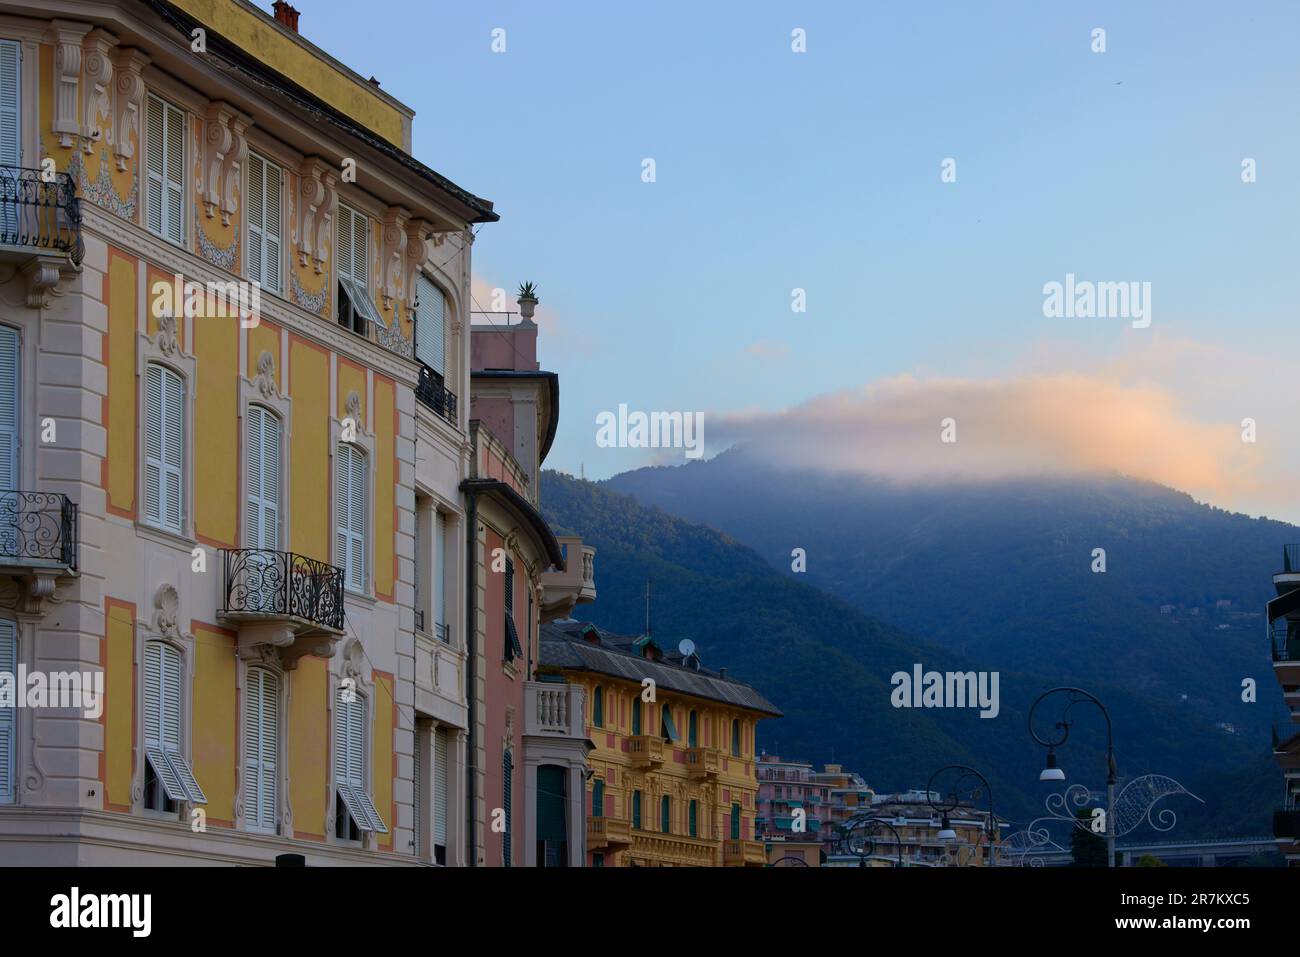 Edifici colorati e nuvole sulla montagna all'alba, Rapallo, Liguria, Italia Foto Stock